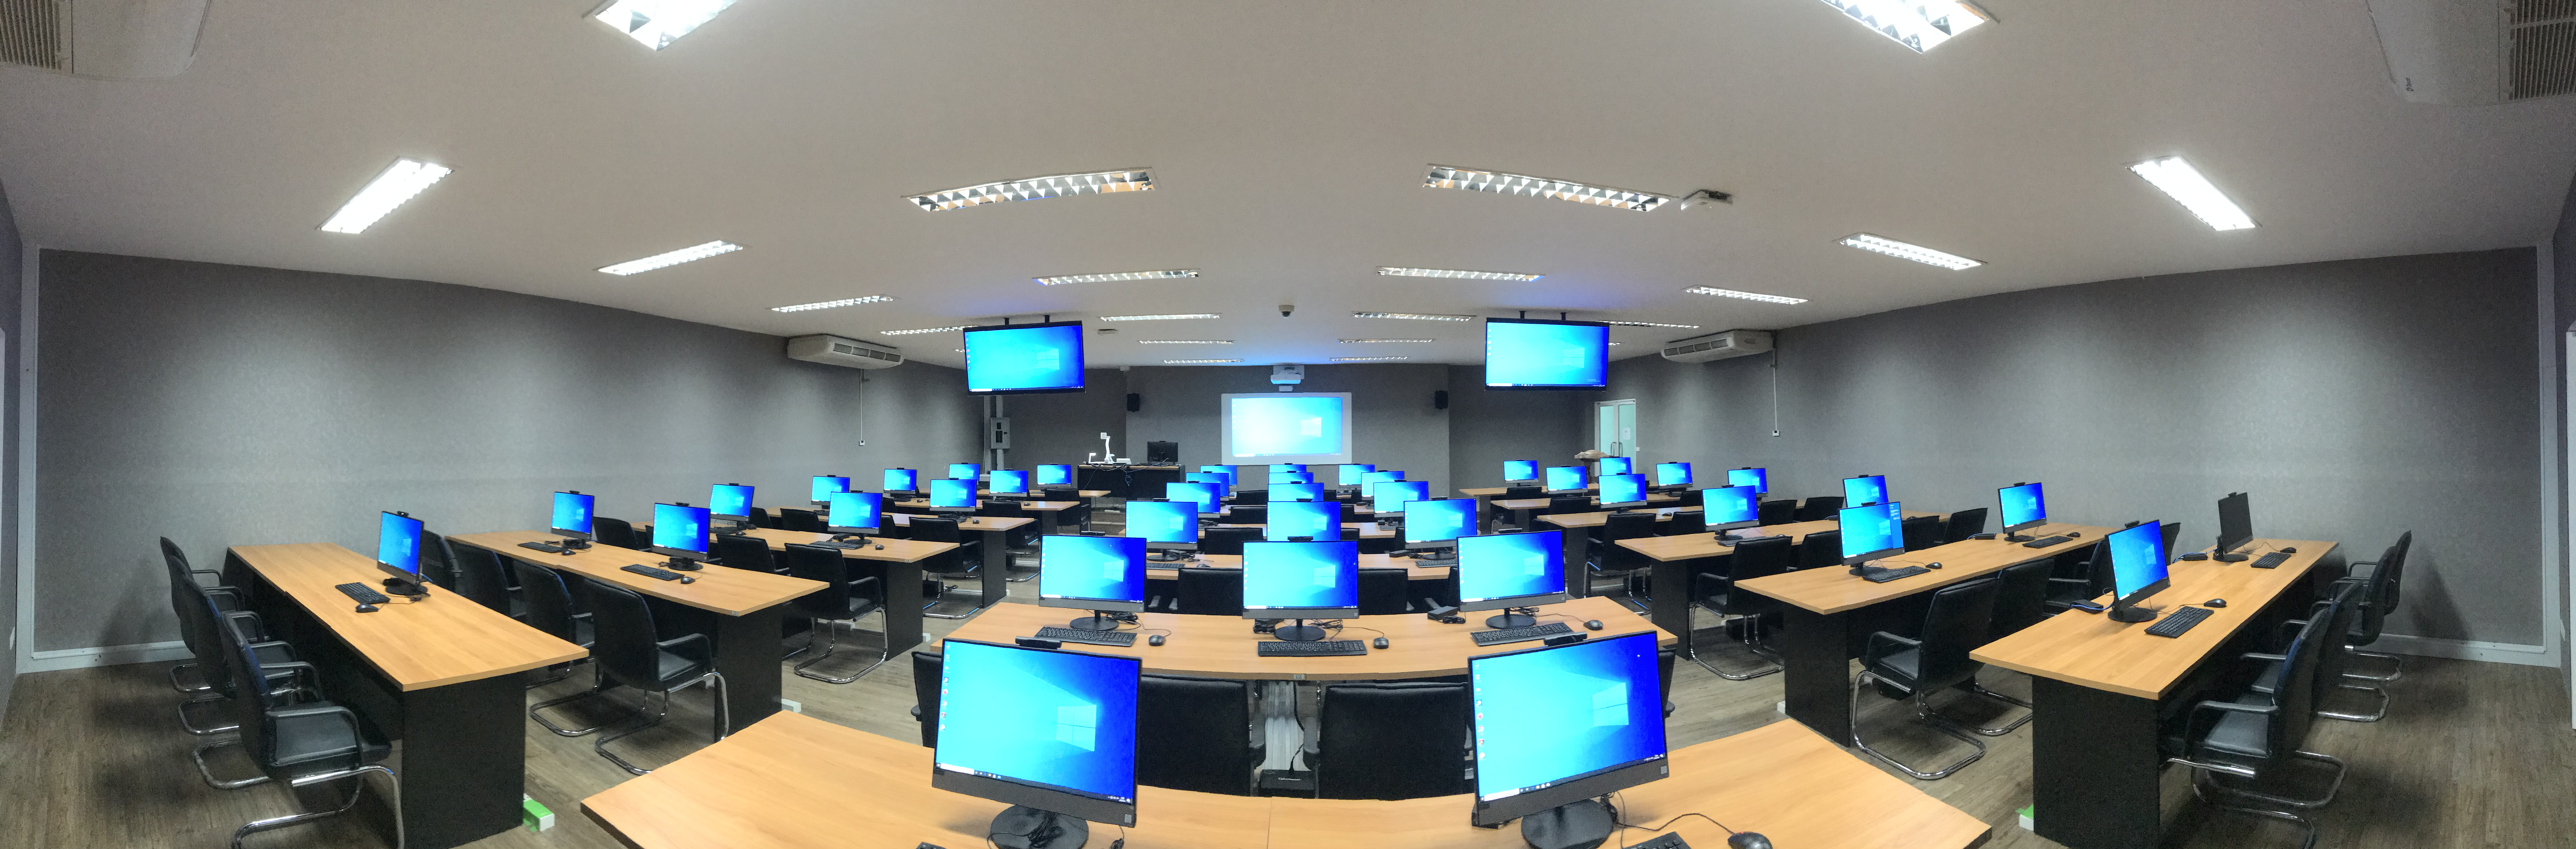 ห้องปฏิบัติการคอมพิวเตอร์ (Computer lab)